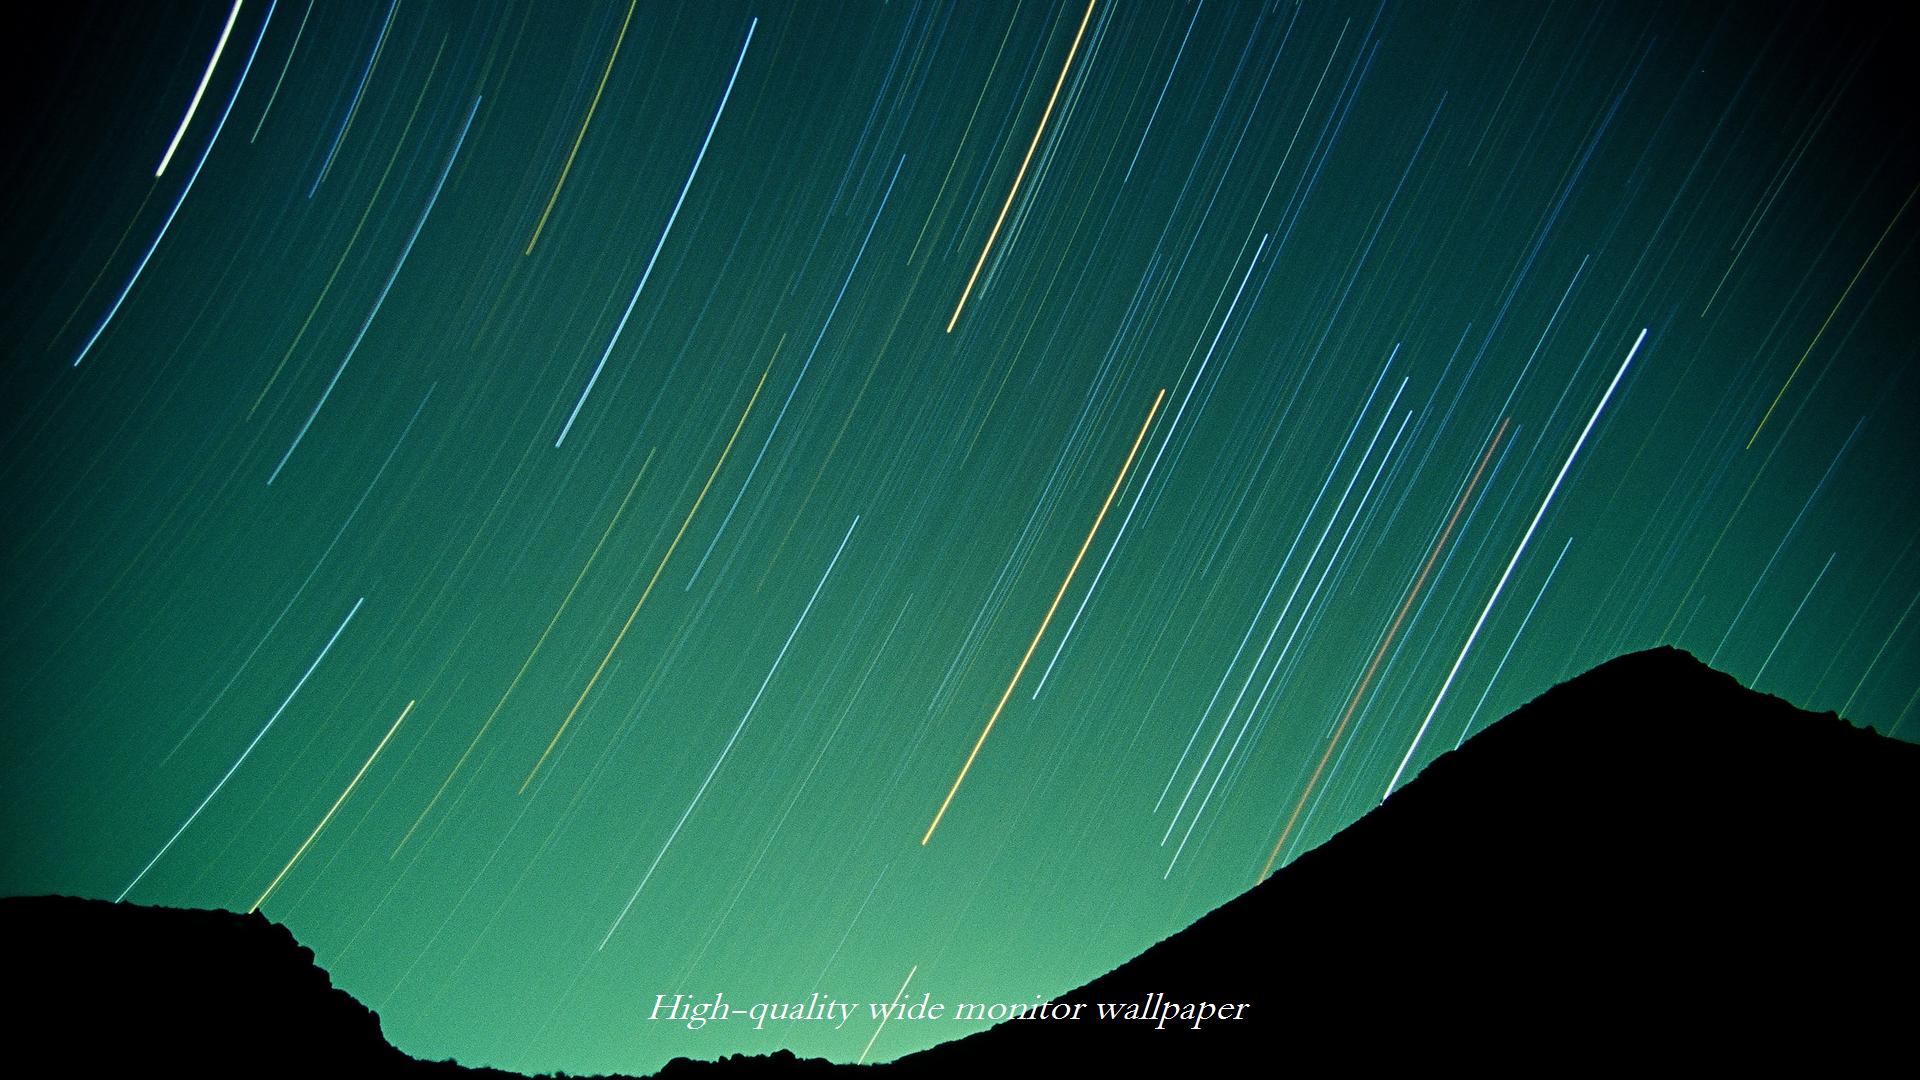 ポジフィルムで撮影した韓国岳とオリオン座をモチーフにしましたワイドモニター 19 1080 高画質壁紙 アスペクト比 １６ ９ 星景写真 長時間露光 Time Lapse 微速度撮影 夜間撮影 インターバル撮影